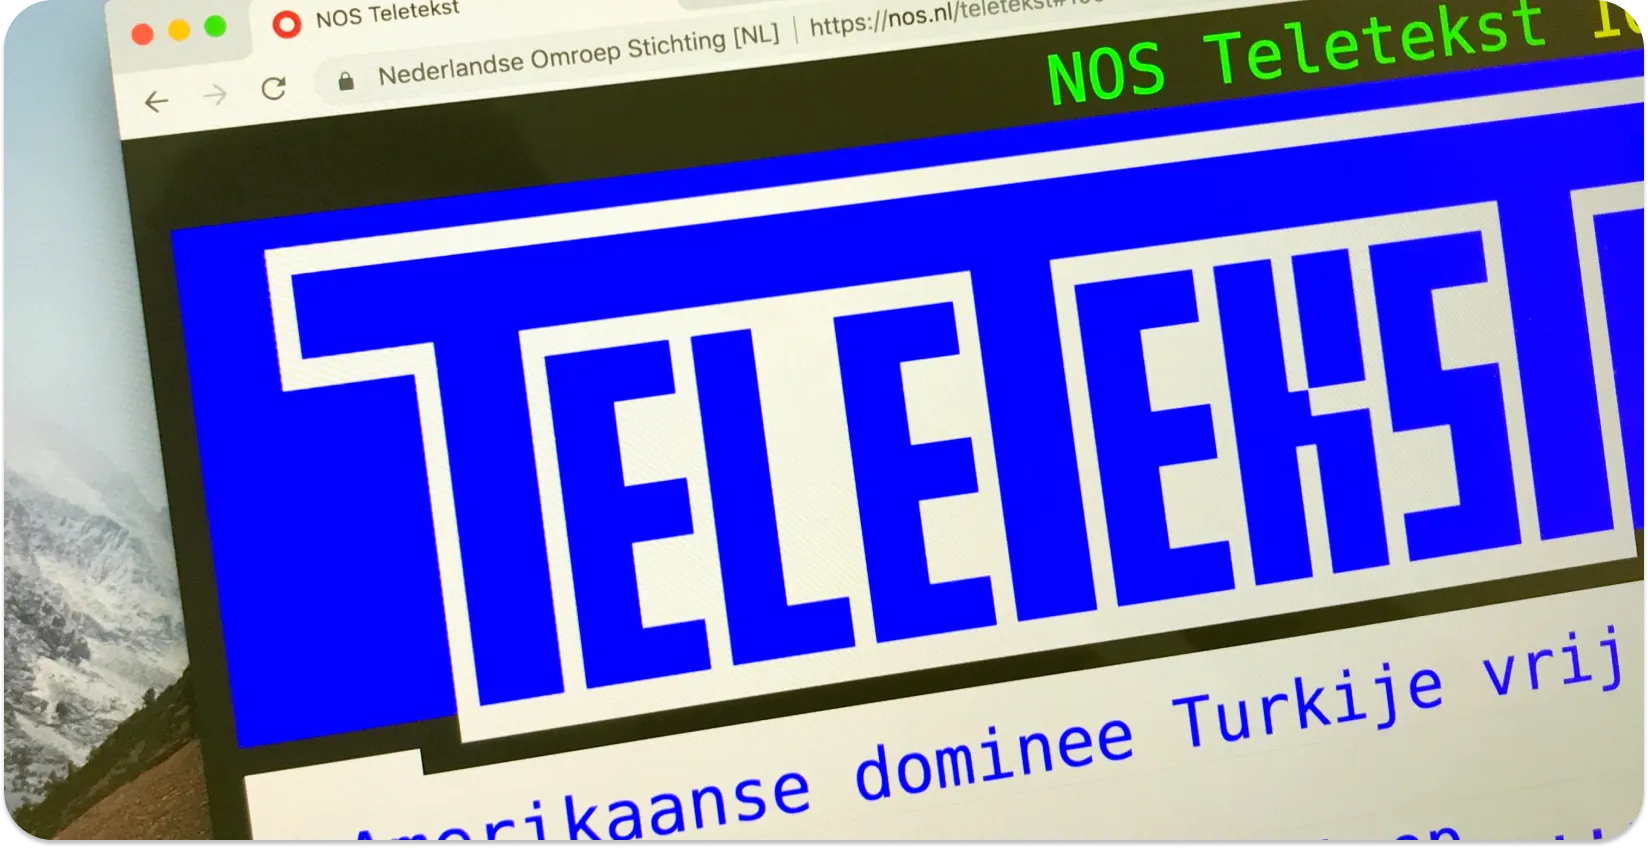 Экран компьютера, отображающий субтитры телетекста с заголовками новостей, иллюстрирующий формат субтитров телетекста.